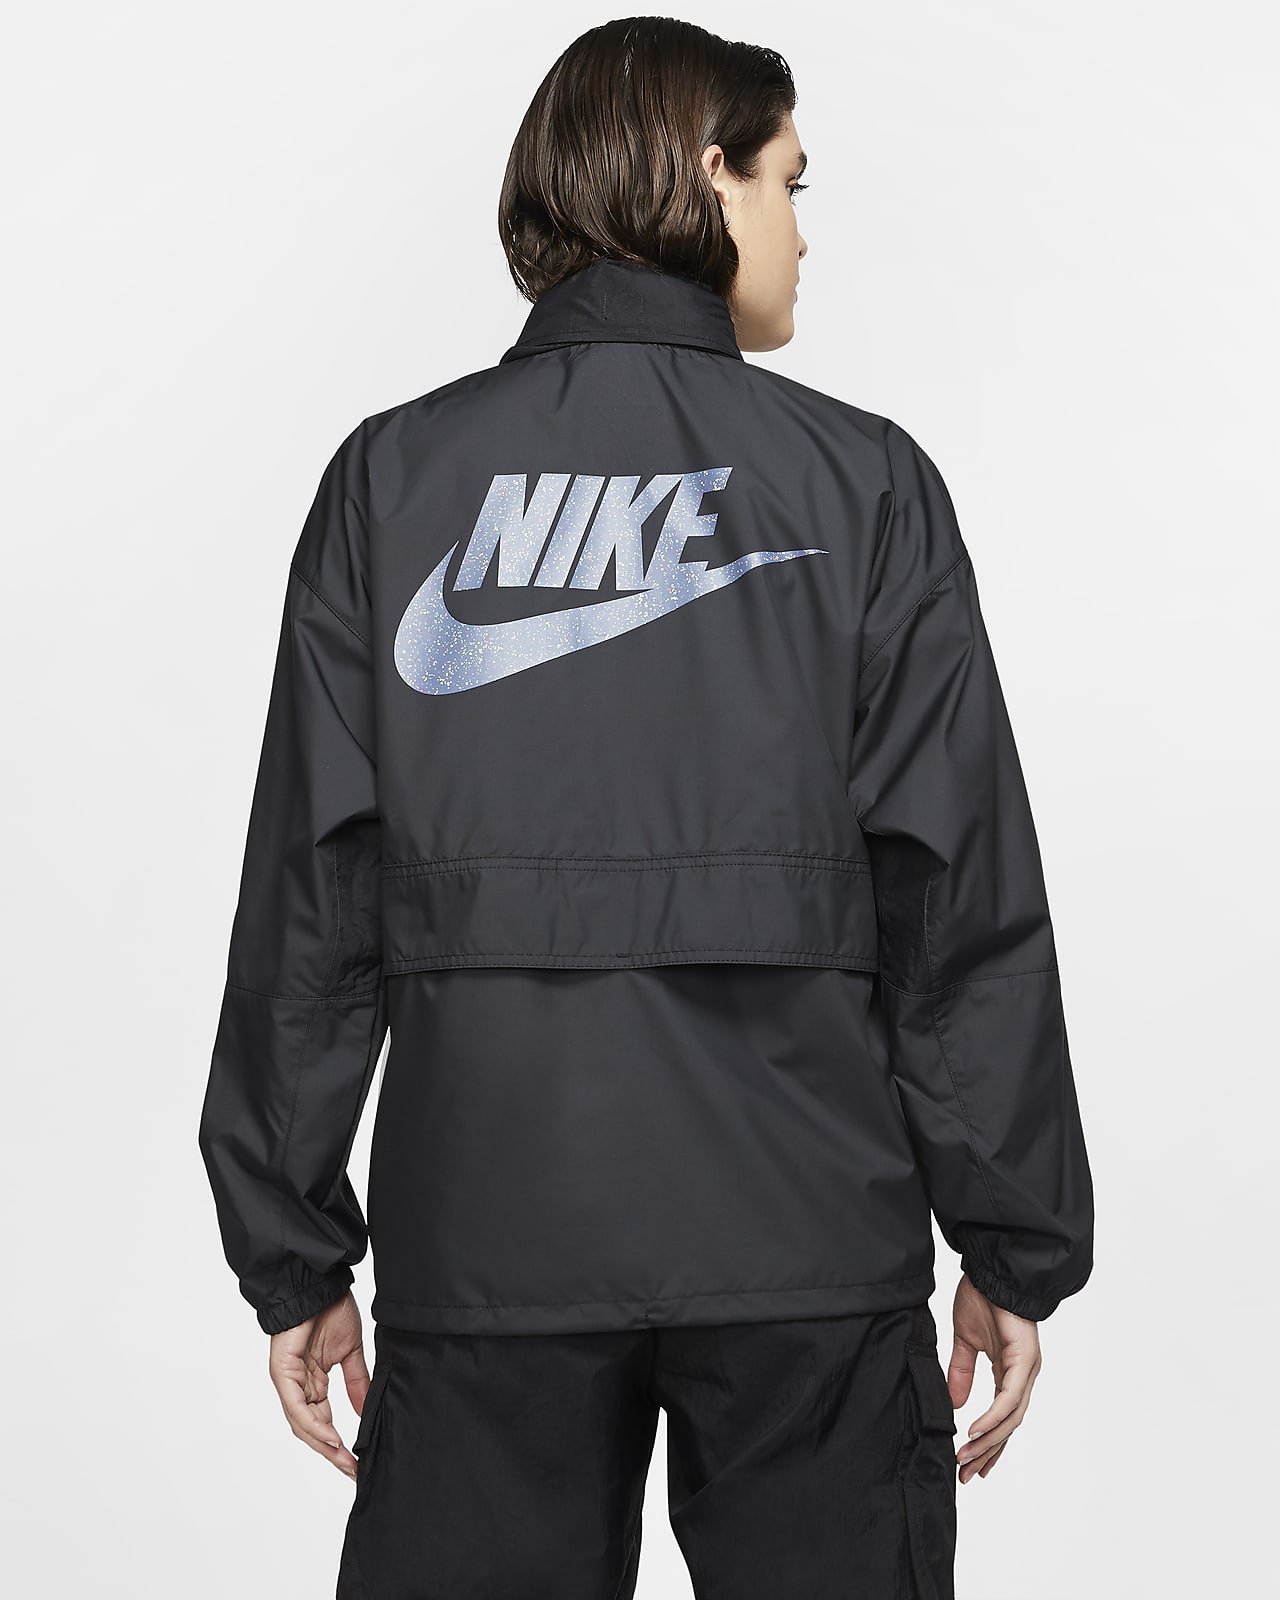 women's nike sportswear jacket